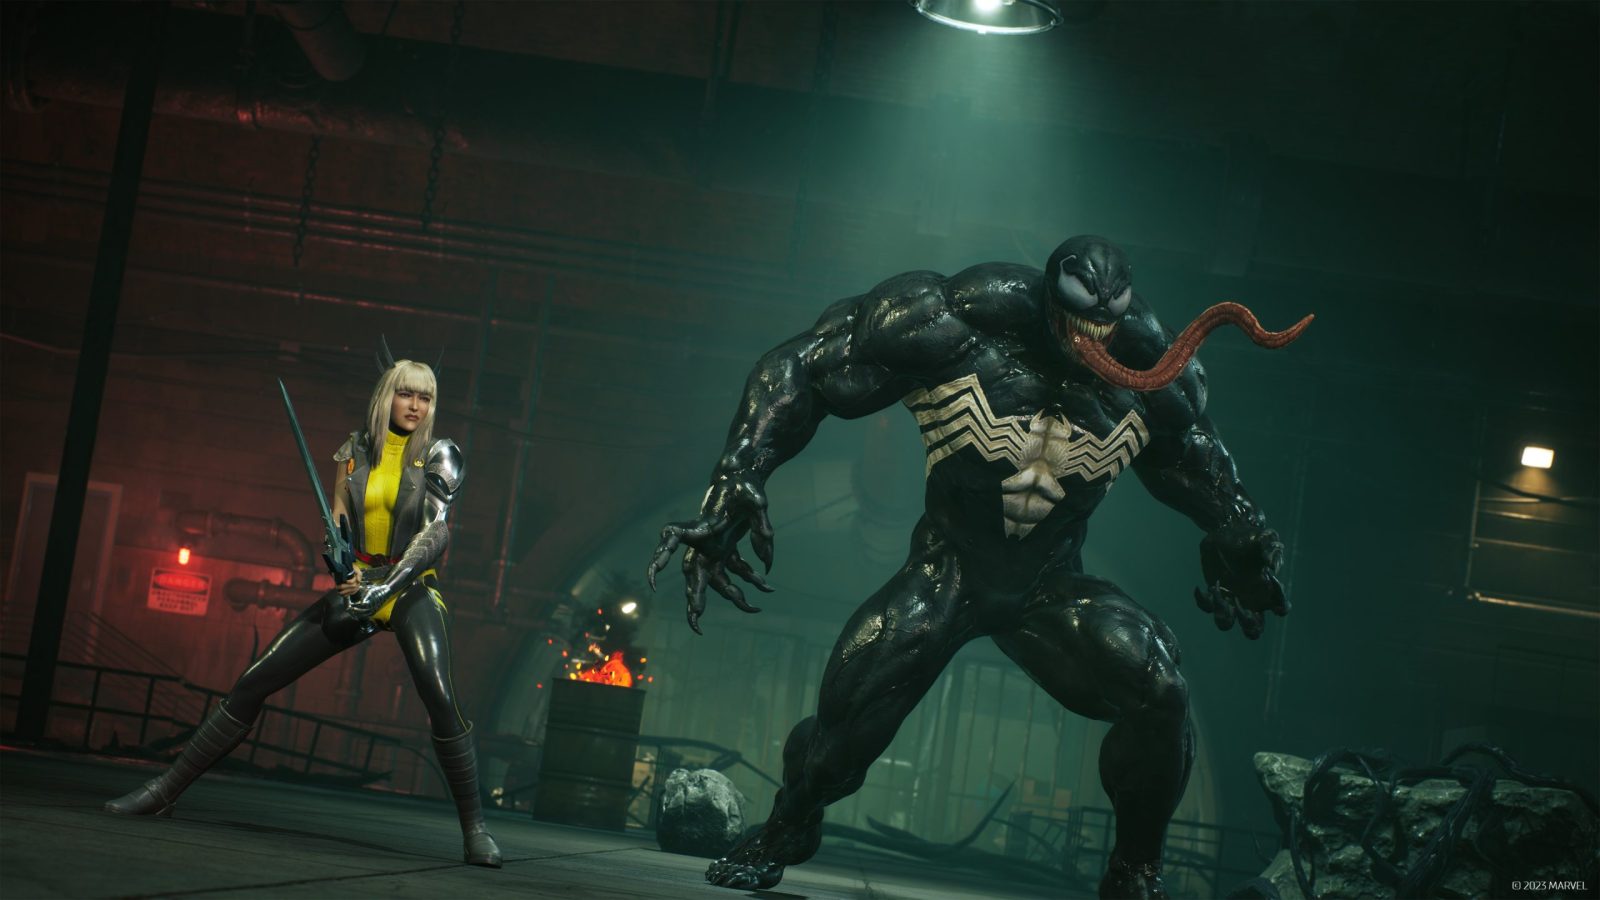 Marvel's Midnight Suns - Official Venom DLC Trailer 